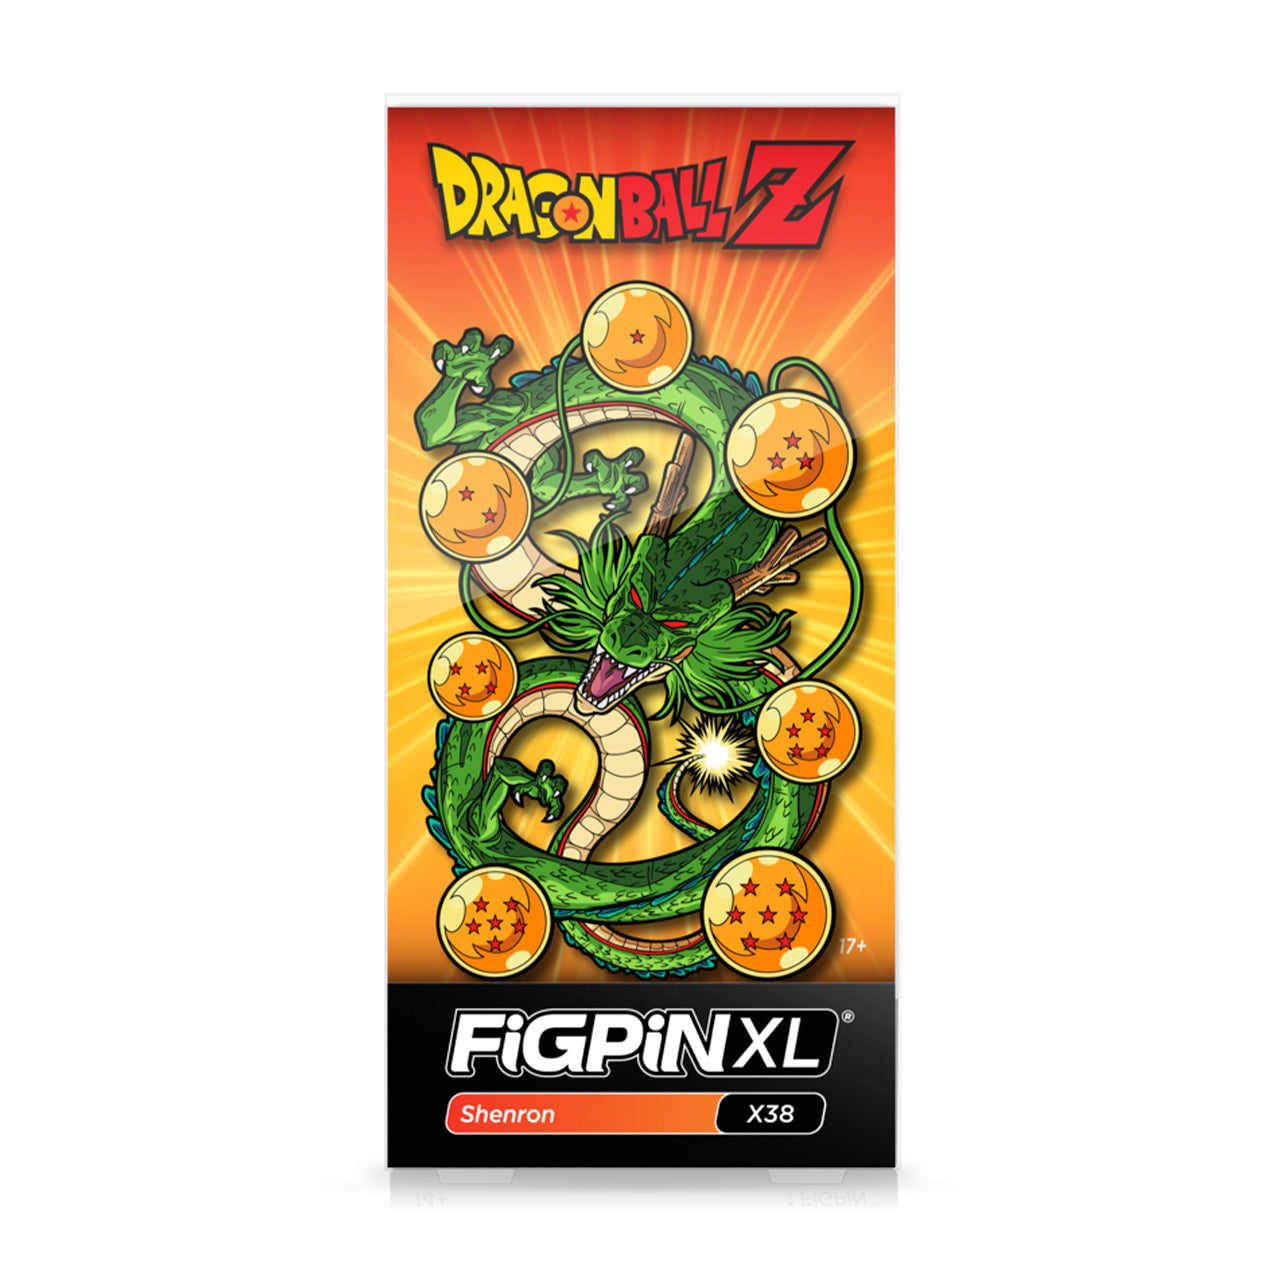 Dragon Ball Z - Shenron FiGPiN XL (#X38) image count 1